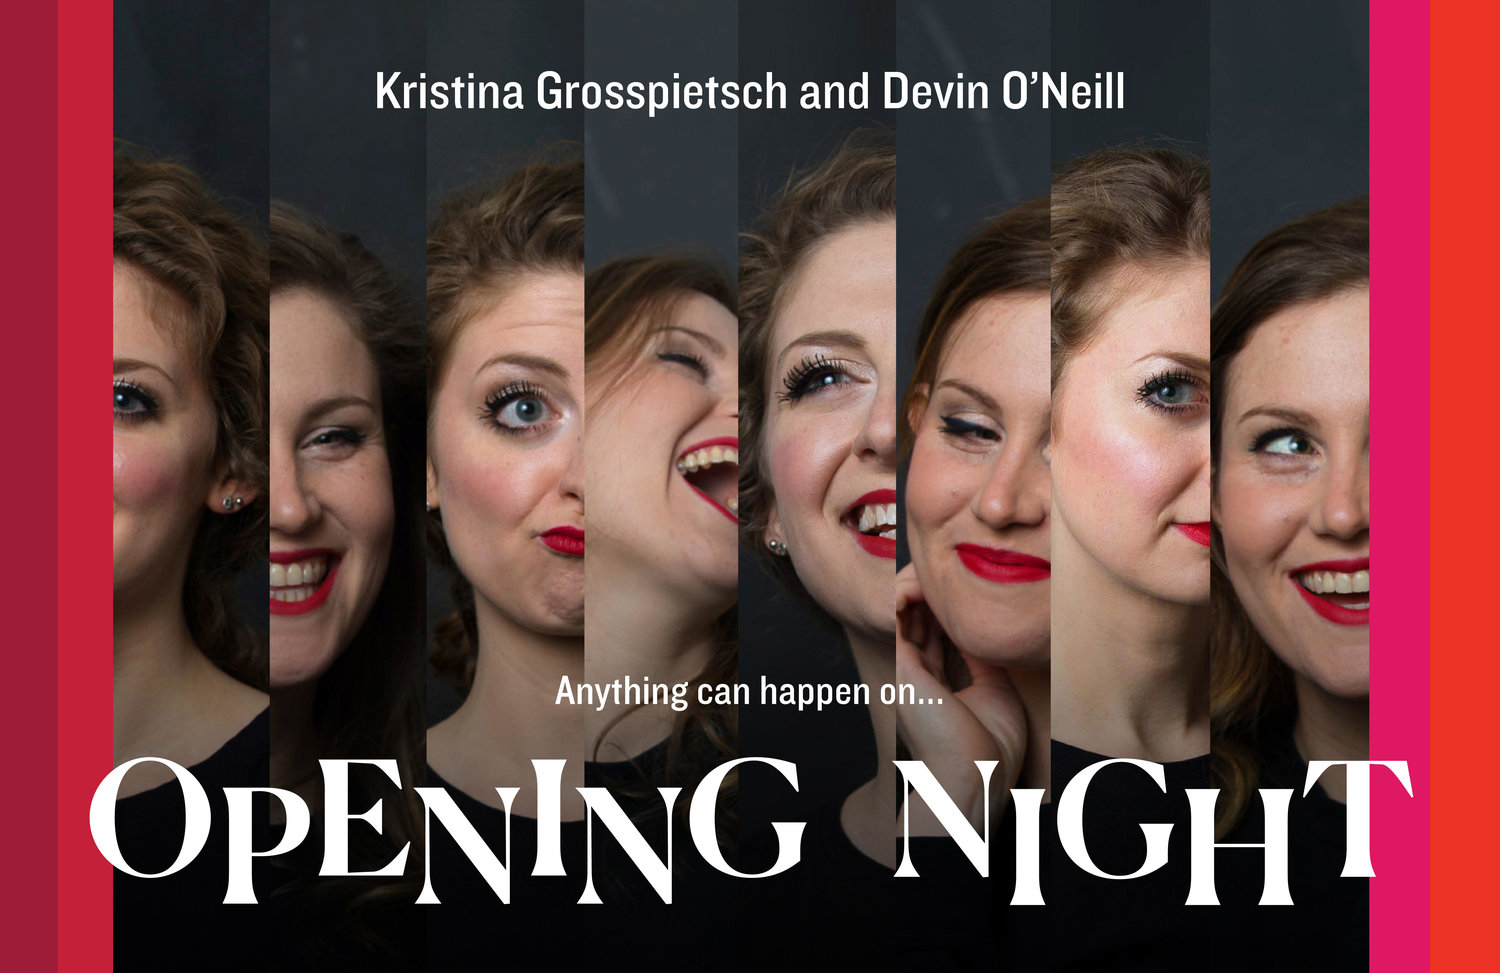 Kristina Grosspietsch & Devin O'Neill: "Opening Night"